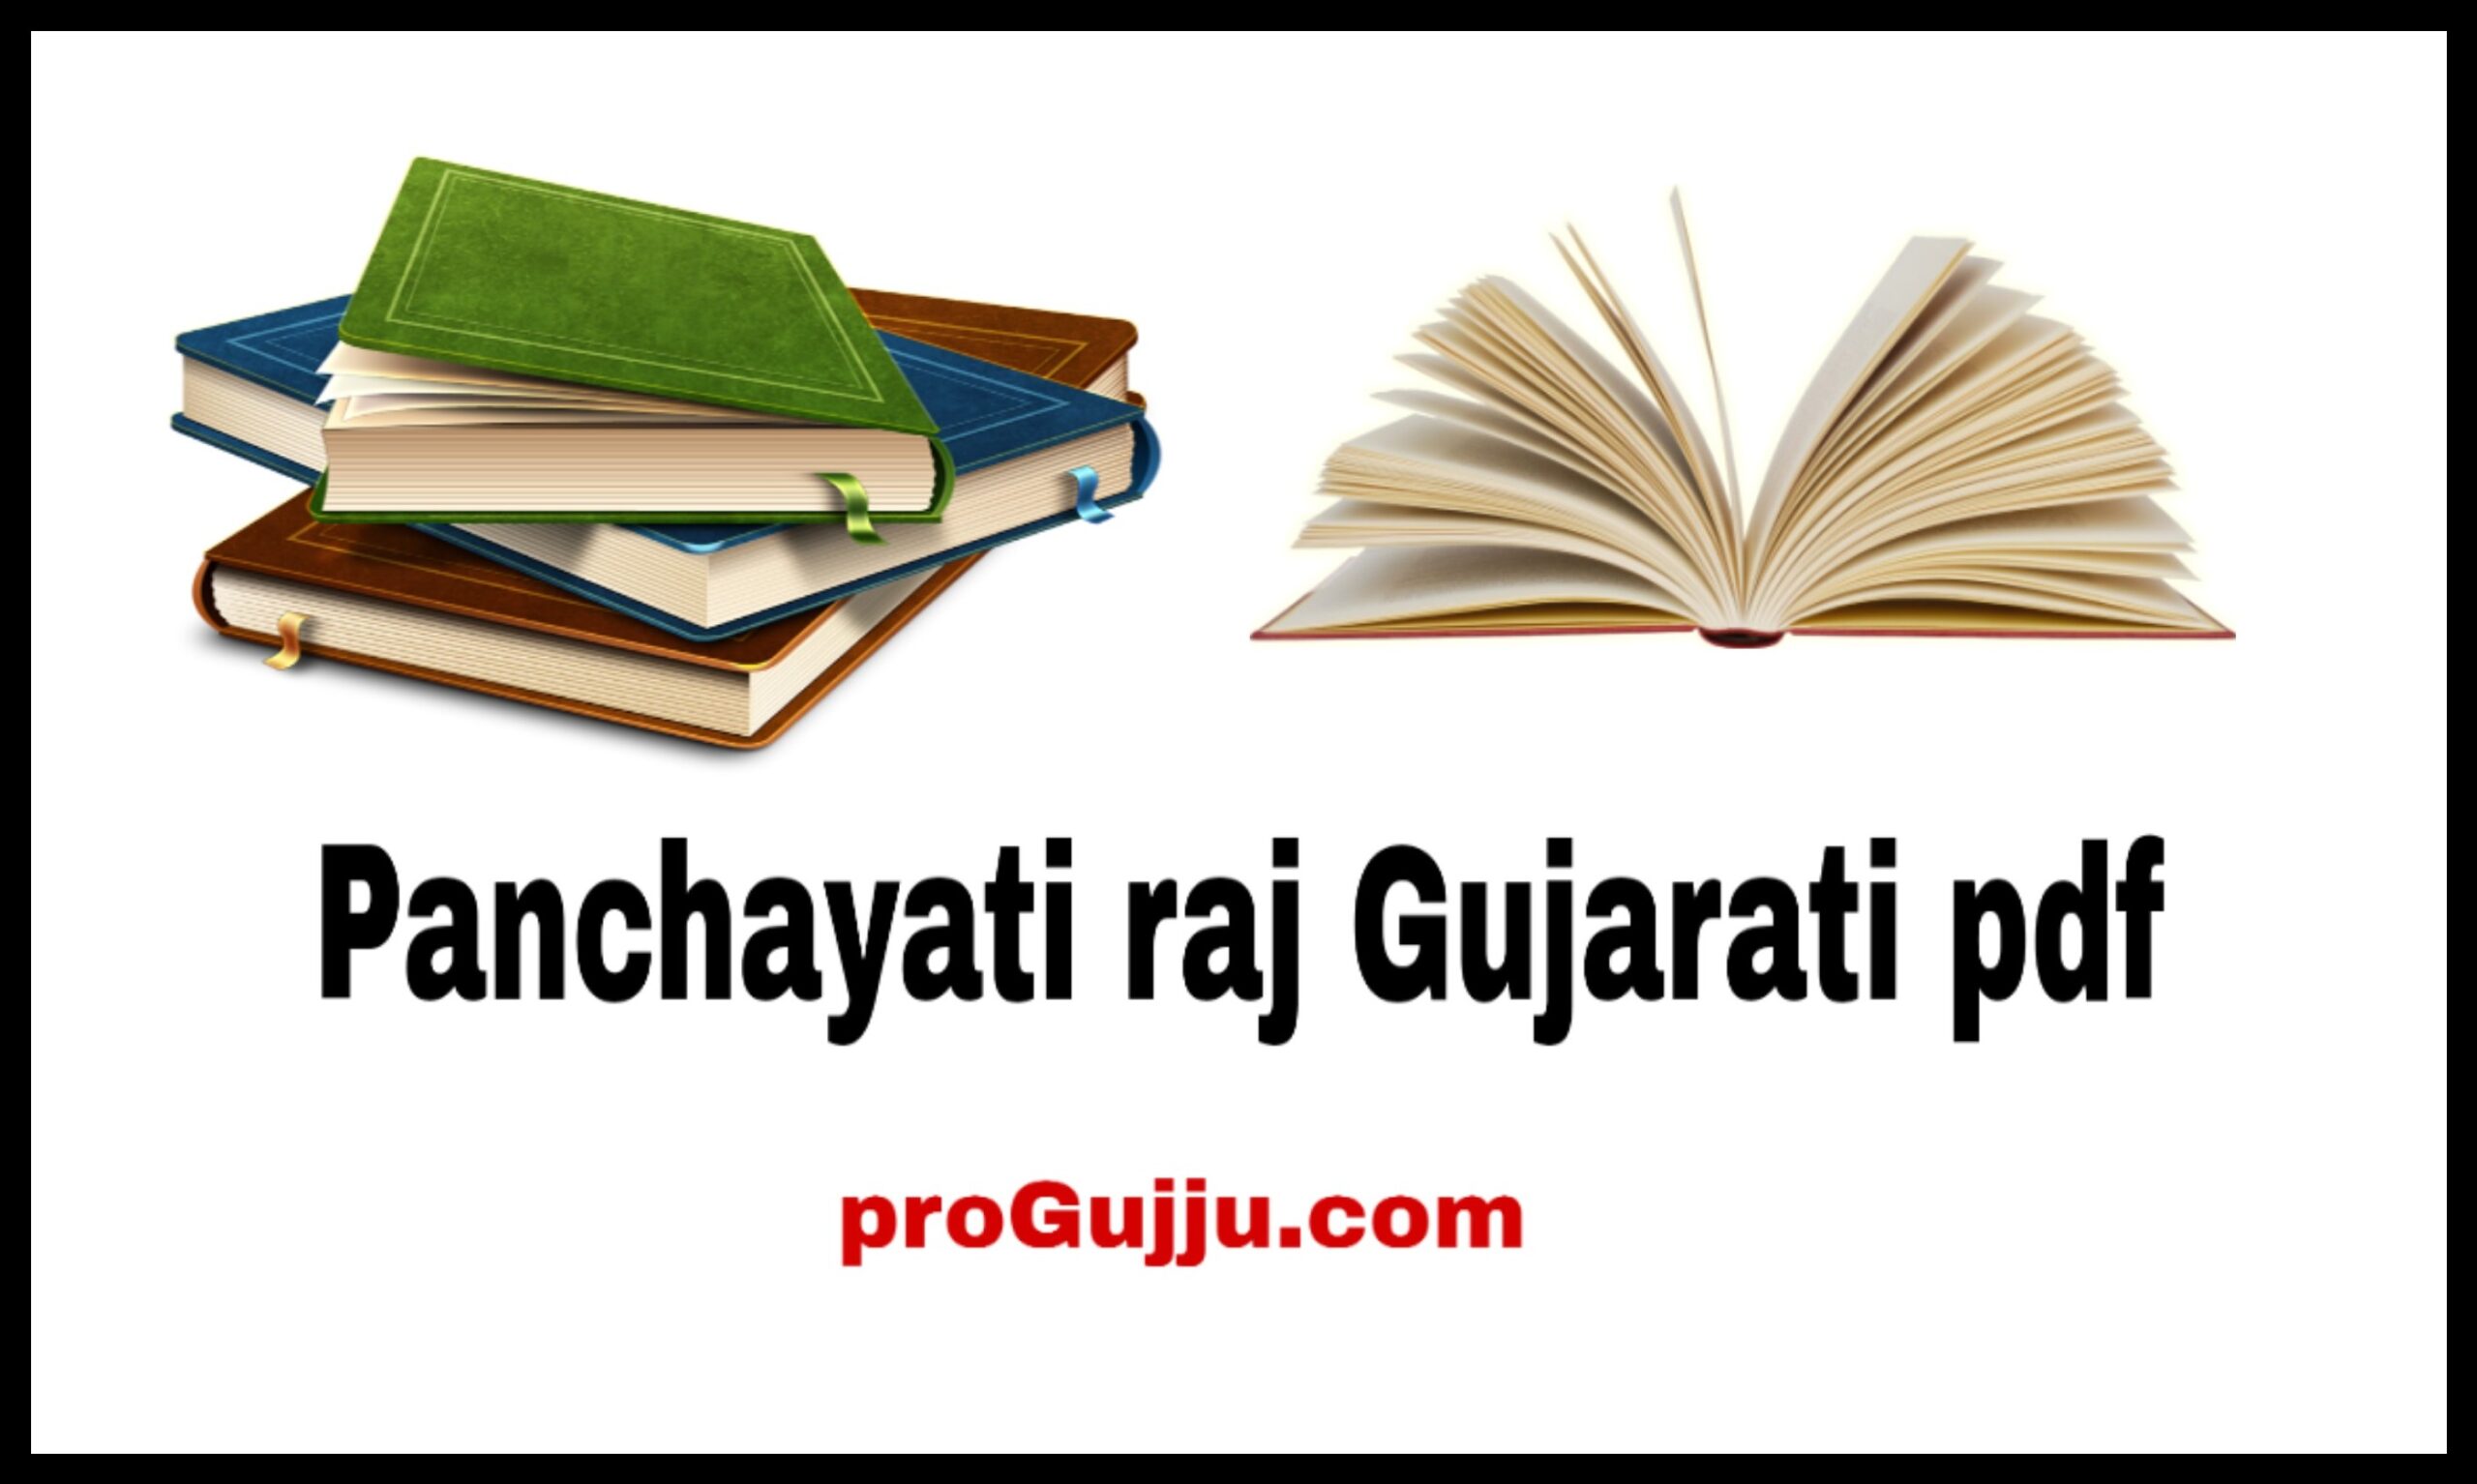 Panchayati raj in Gujarati book pdf